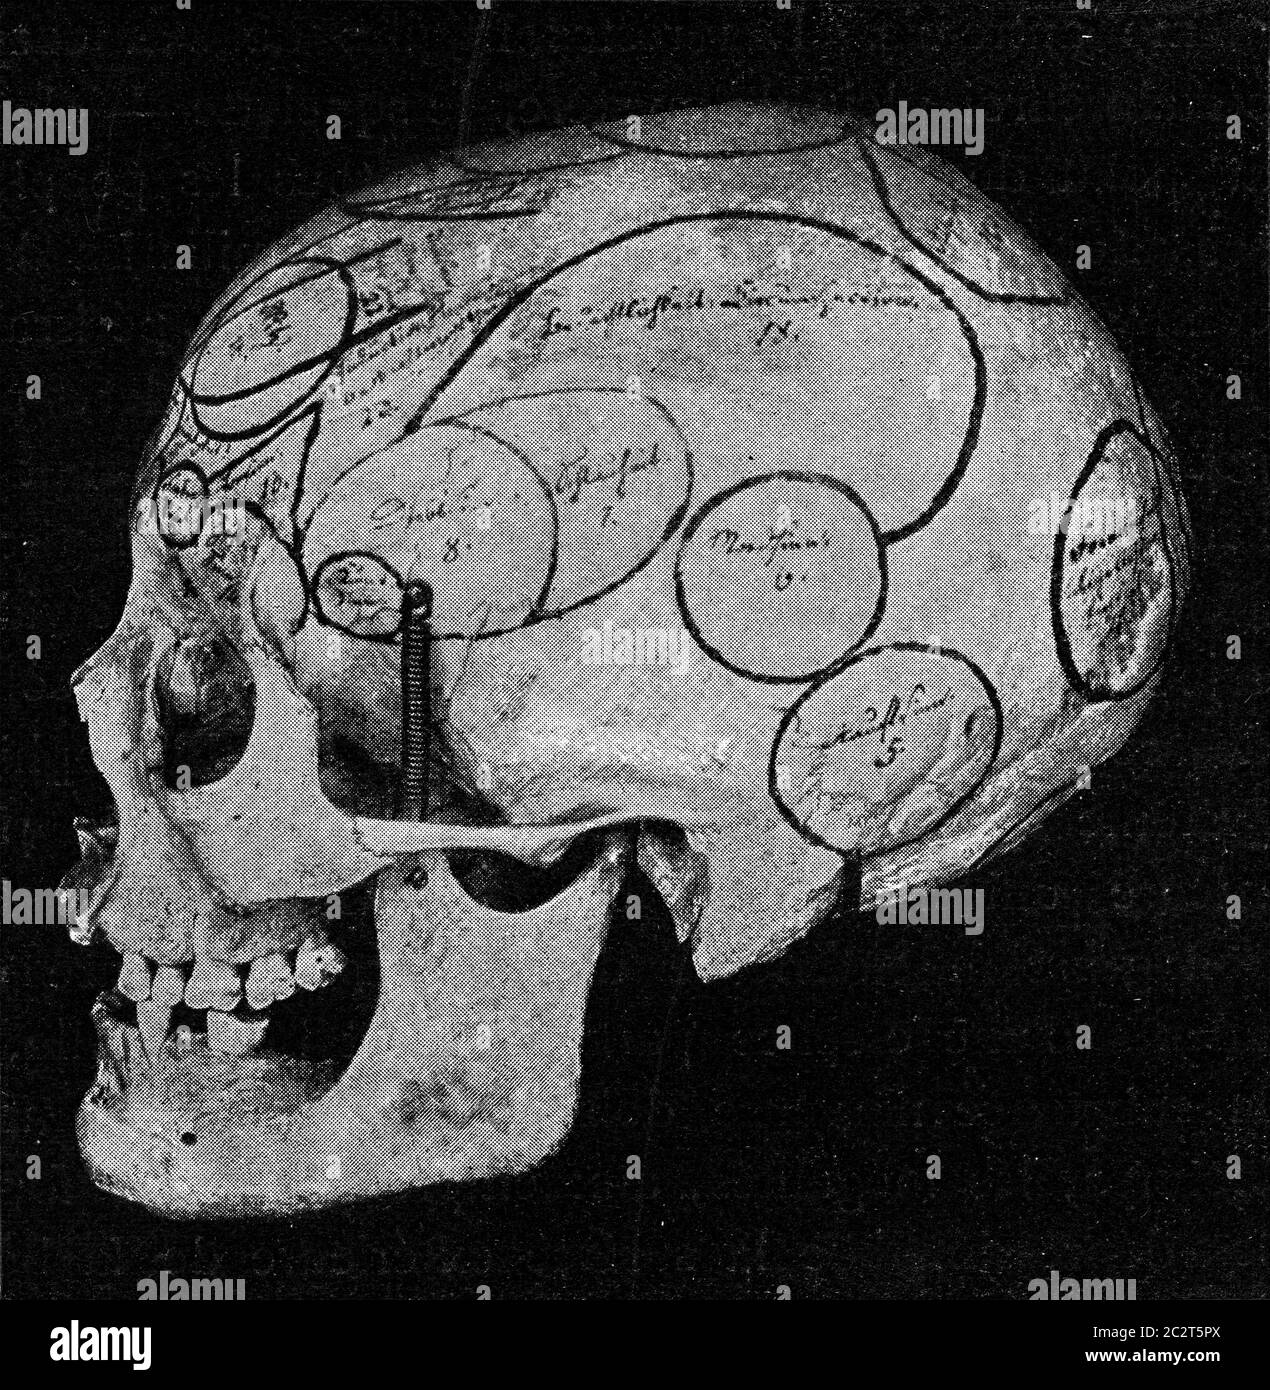 Schädel mit Angabe von Galle-Organen von der Seite und vom Rücken, Vintage-gravierte Abbildung. Aus dem Universum und der Menschheit, 1910. Stockfoto